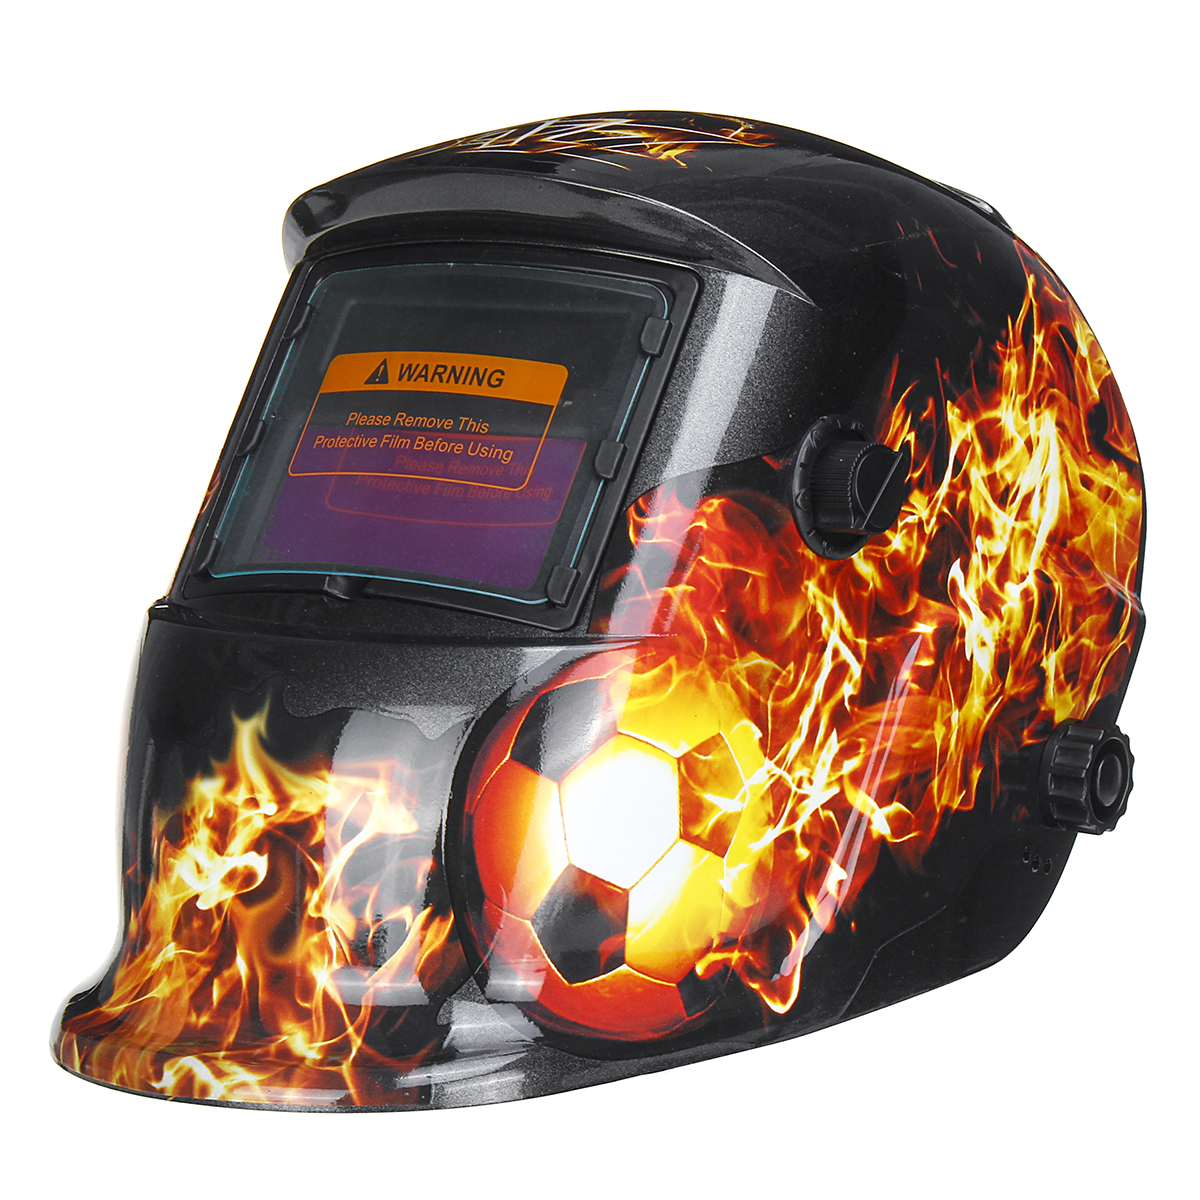 

Auto Darkening Welding Helmet Arc Tig mig Grinding Welders Mask Solar